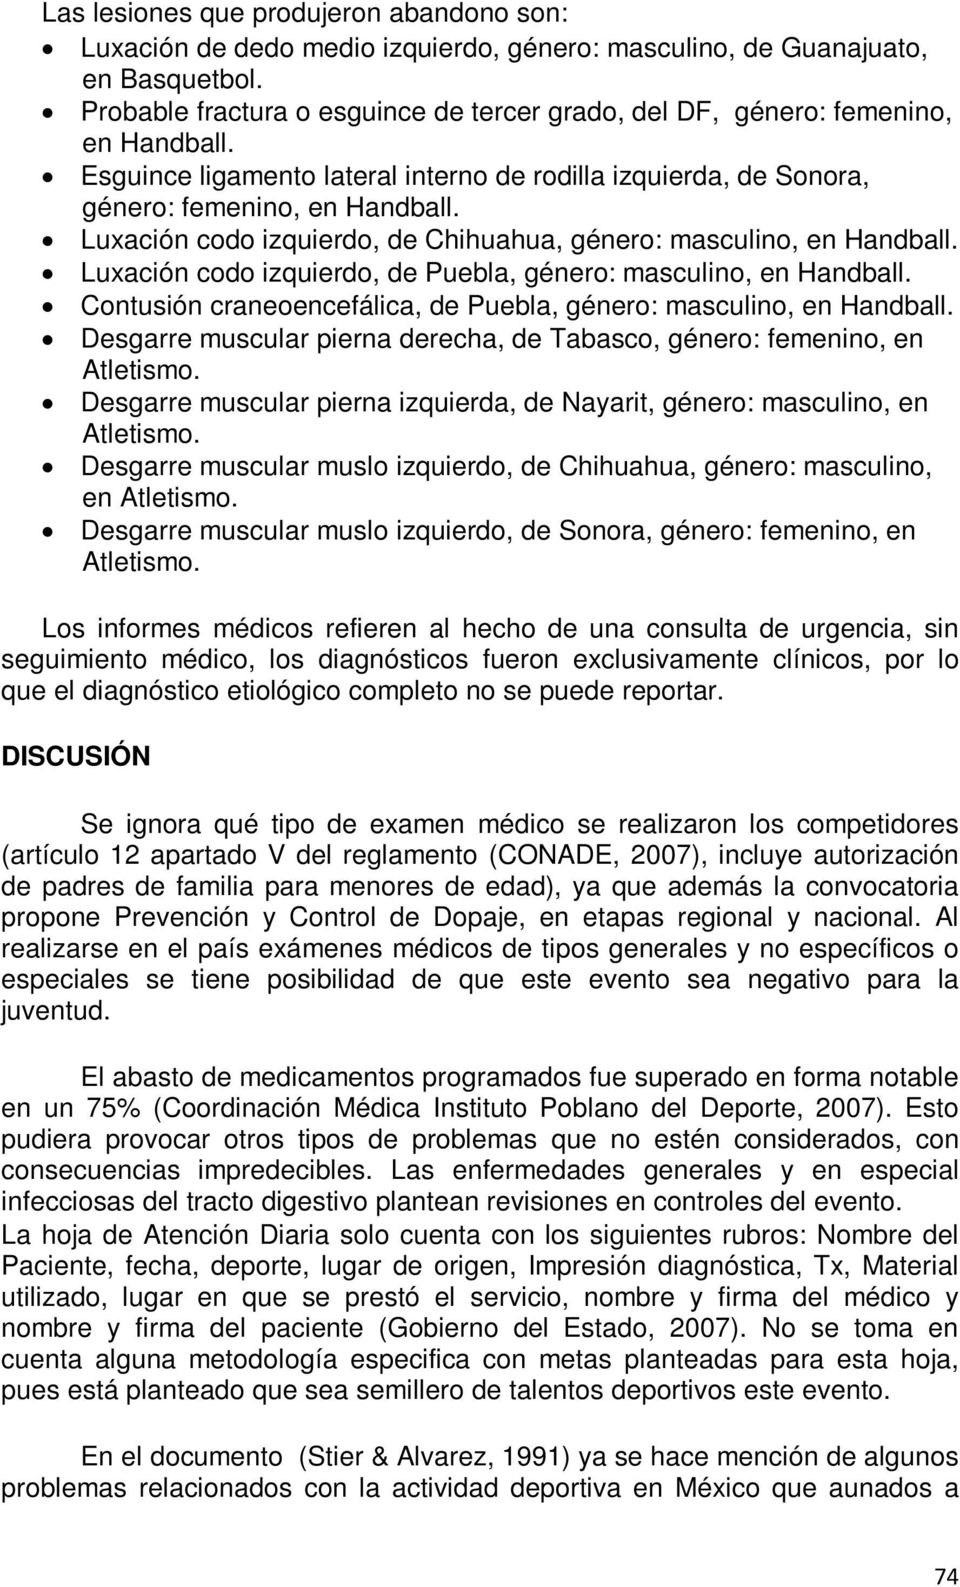 Luxación codo izquierdo, de Chihuahua, género: masculino, en Handball. Luxación codo izquierdo, de Puebla, género: masculino, en Handball.